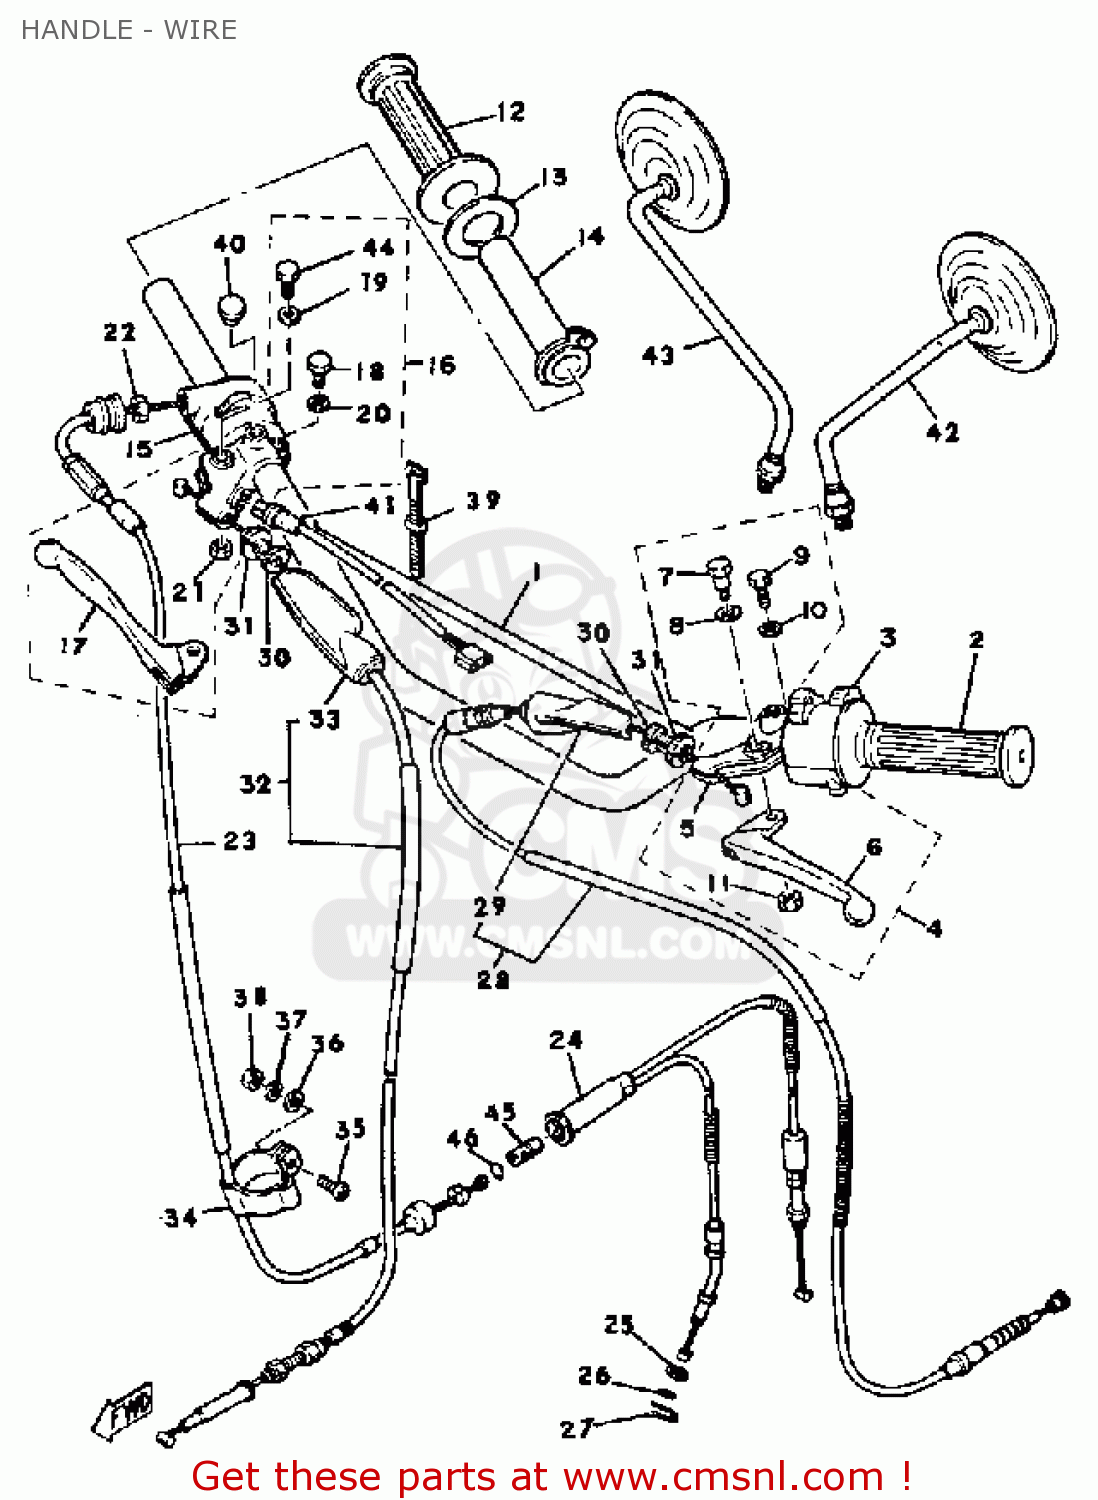 1976 yamaha dt175 wiring diagram